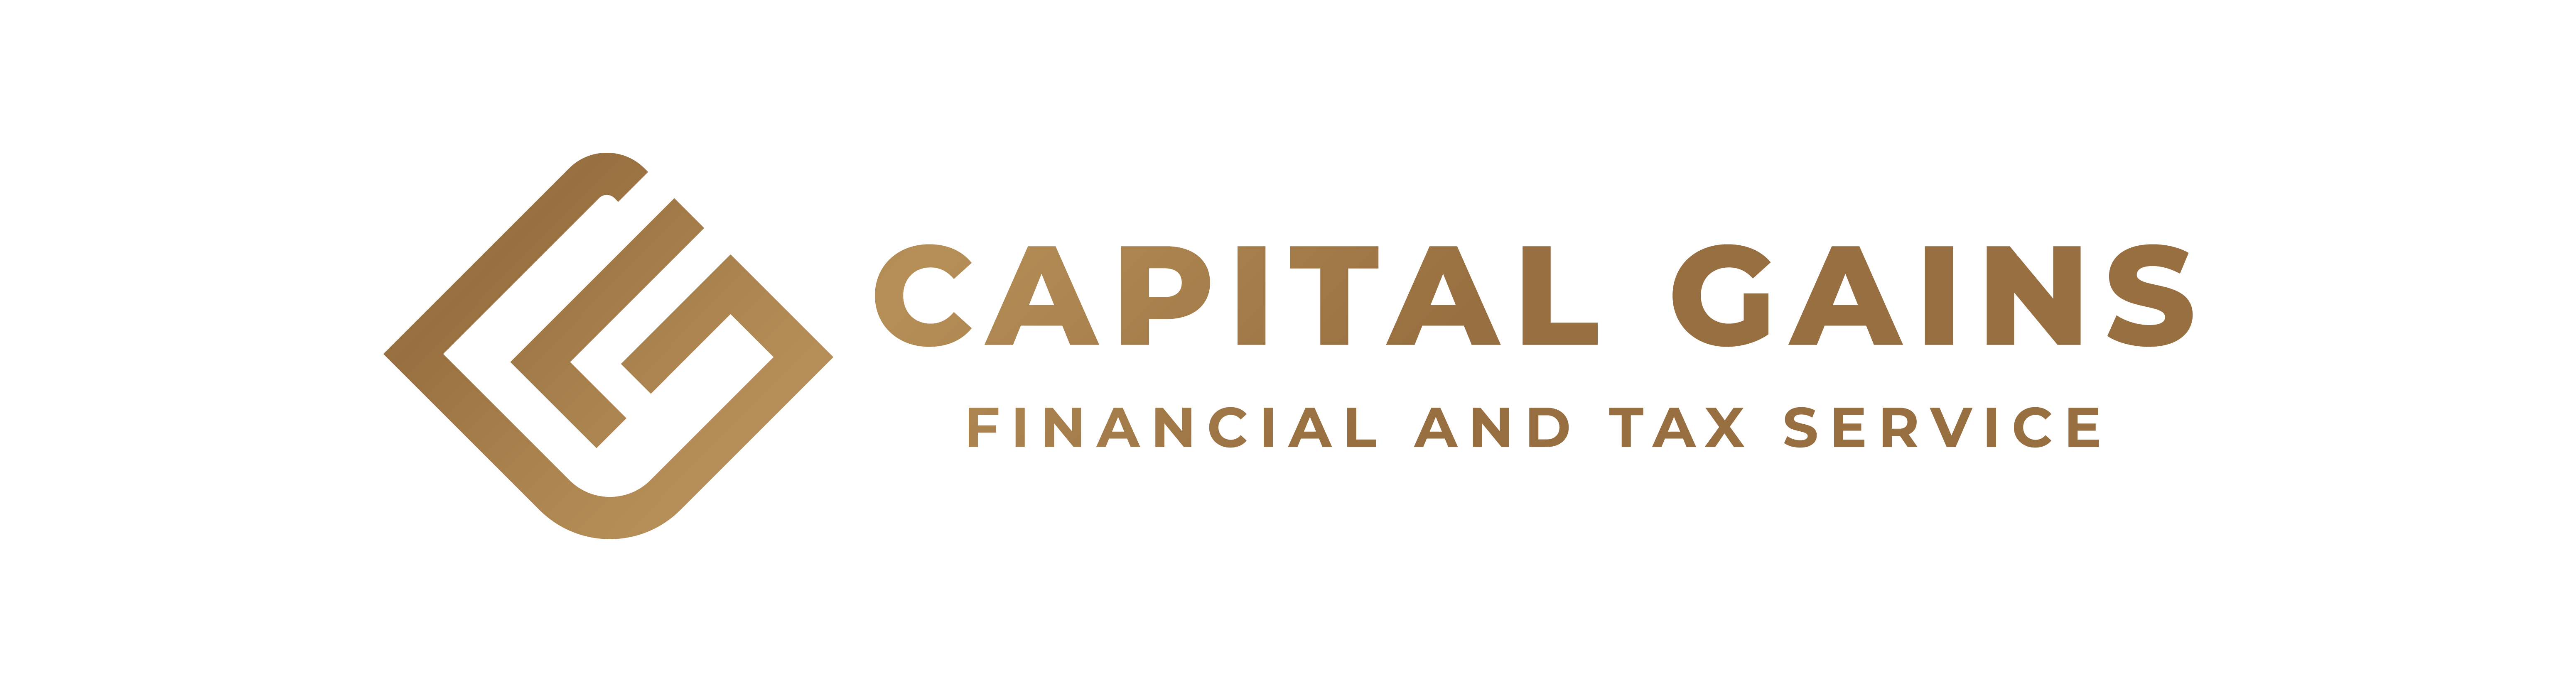 Capital Gains Financial